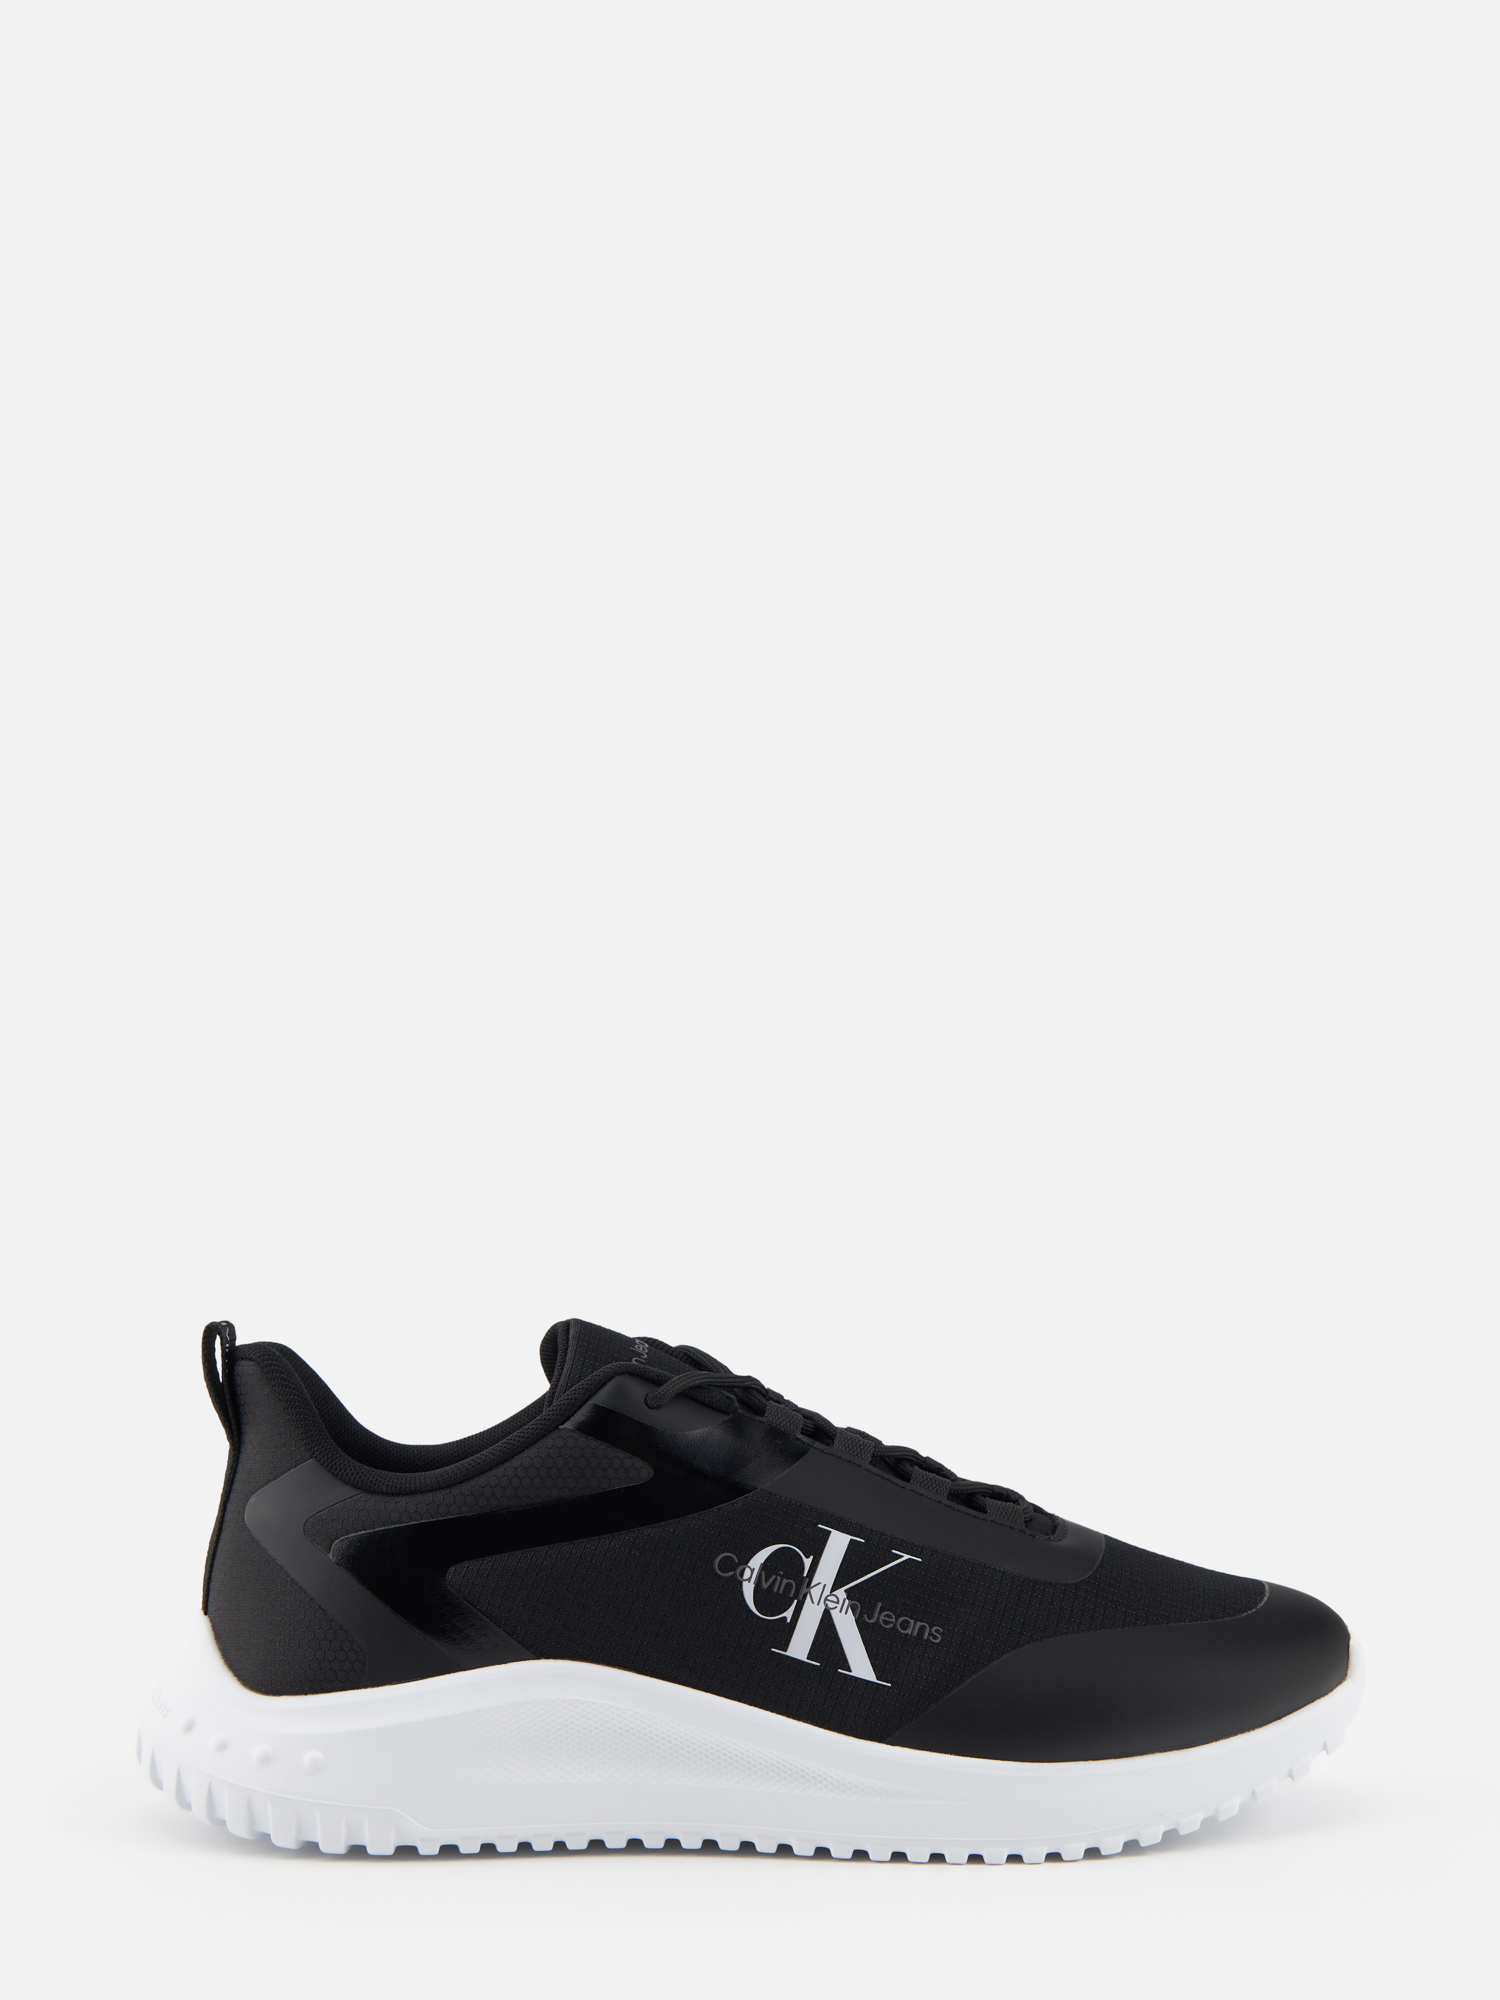 Кроссовки мужские Calvin Klein YM0YM00968 черные 45 RU